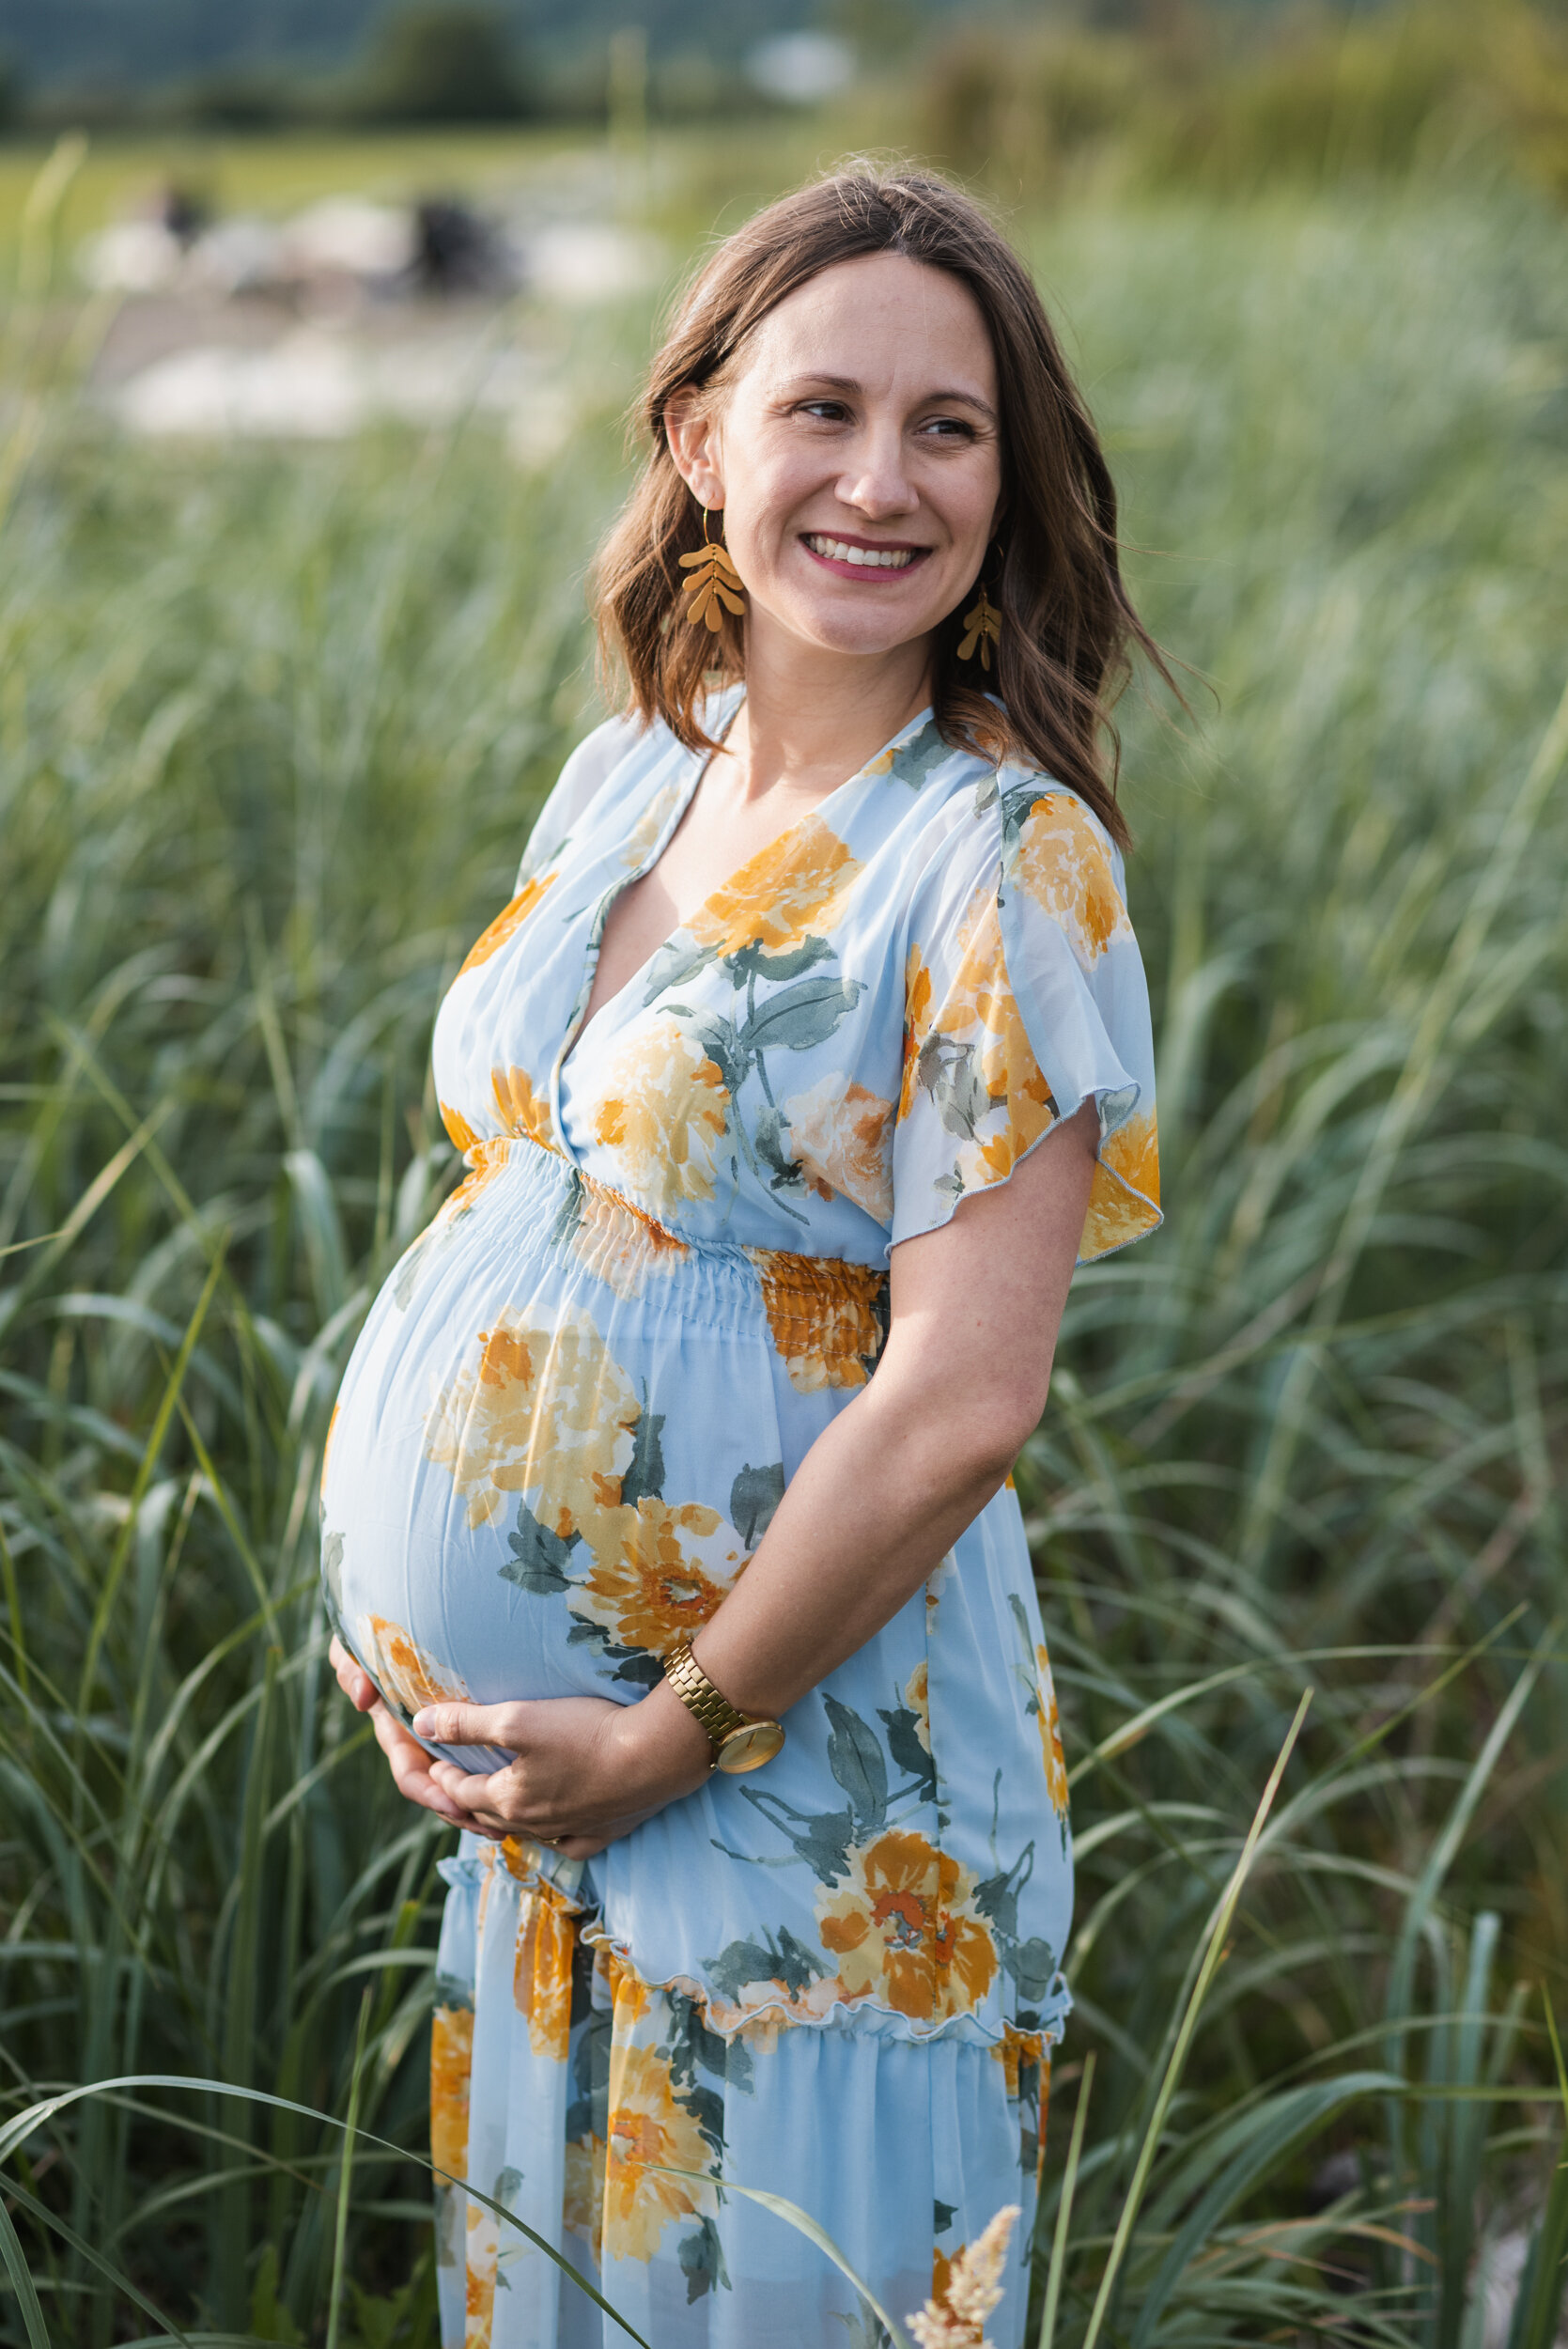 Pregnant woman beach grass